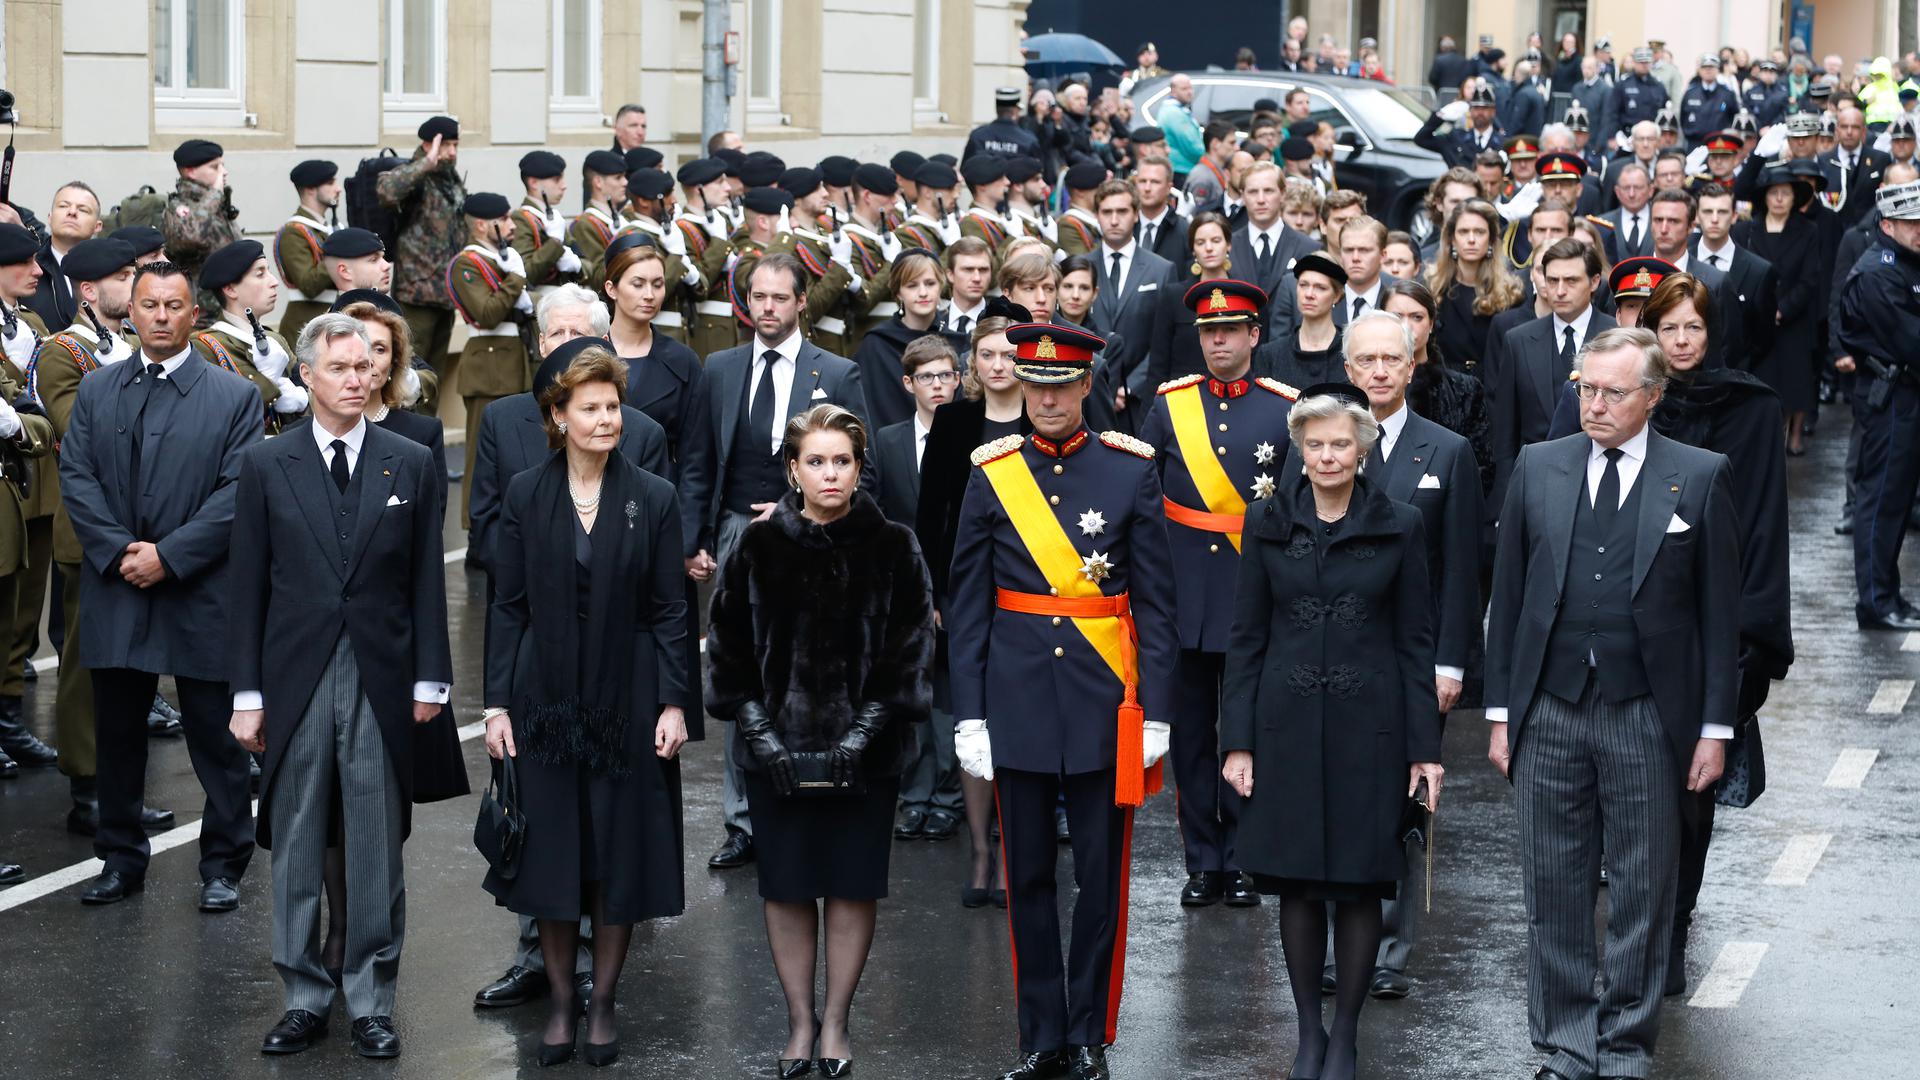 Au premier plan se trouvaient les enfants du grand-duc Jean : le prince Guillaume, la princesse Margaretha du Liechtenstein, la grande-duchesse Maria Teresa et le grand-duc Henri de Luxembourg, l'Archiduchesse Marie-Astrid d'Autriche et le prince Jean (de gauche à droite).